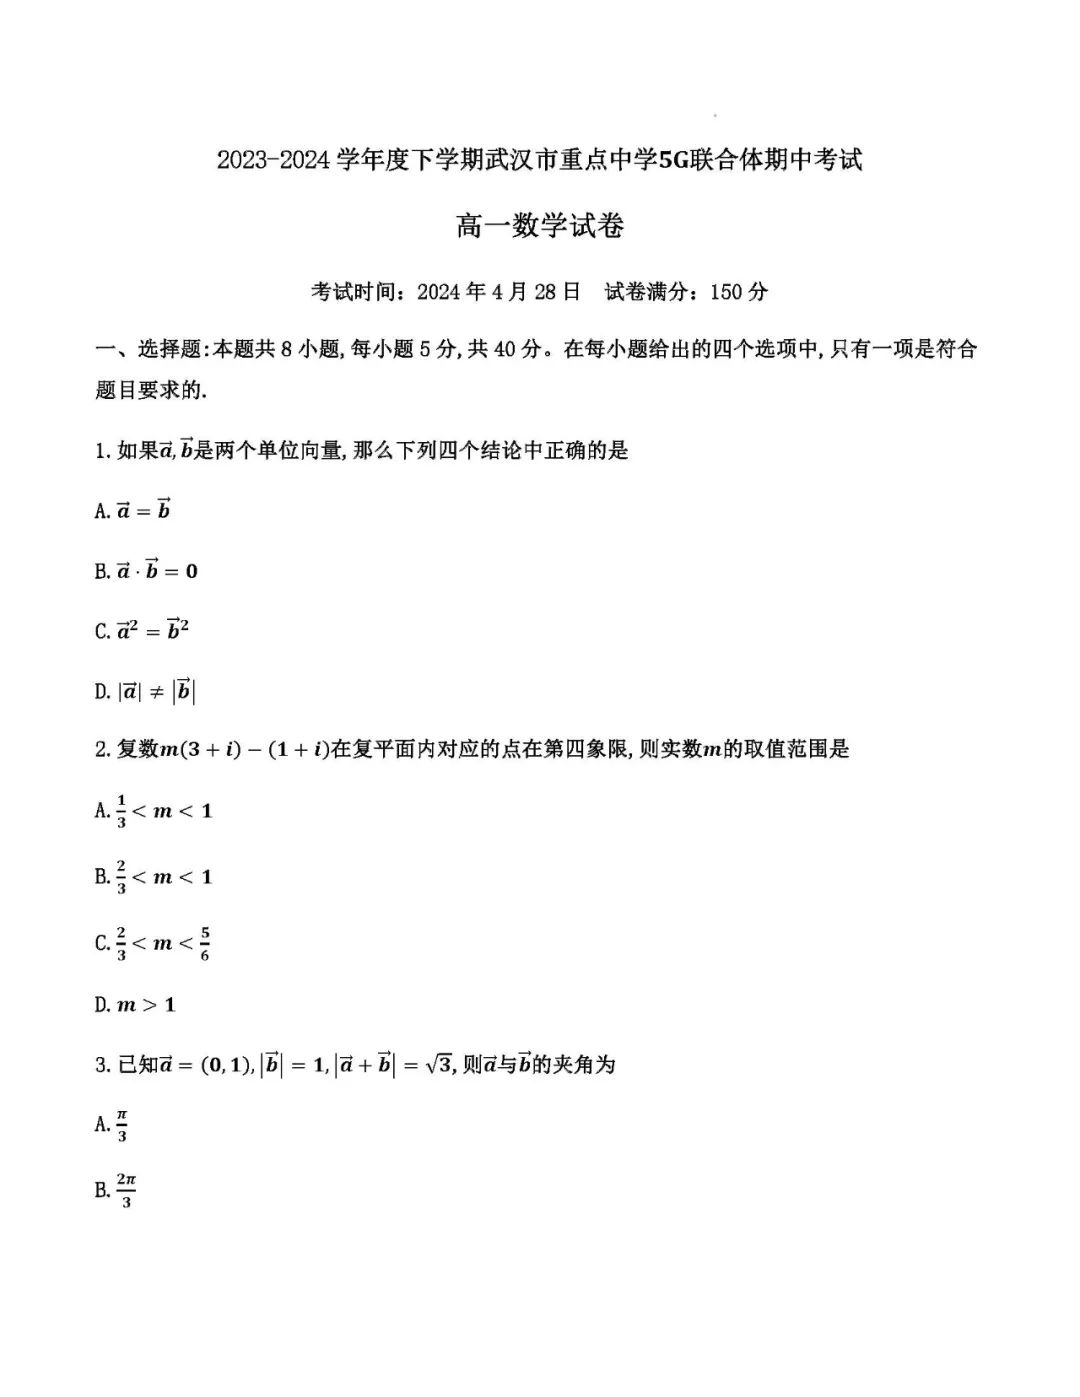 湖北武汉5G联合体2024年高一下期中考试数学试题